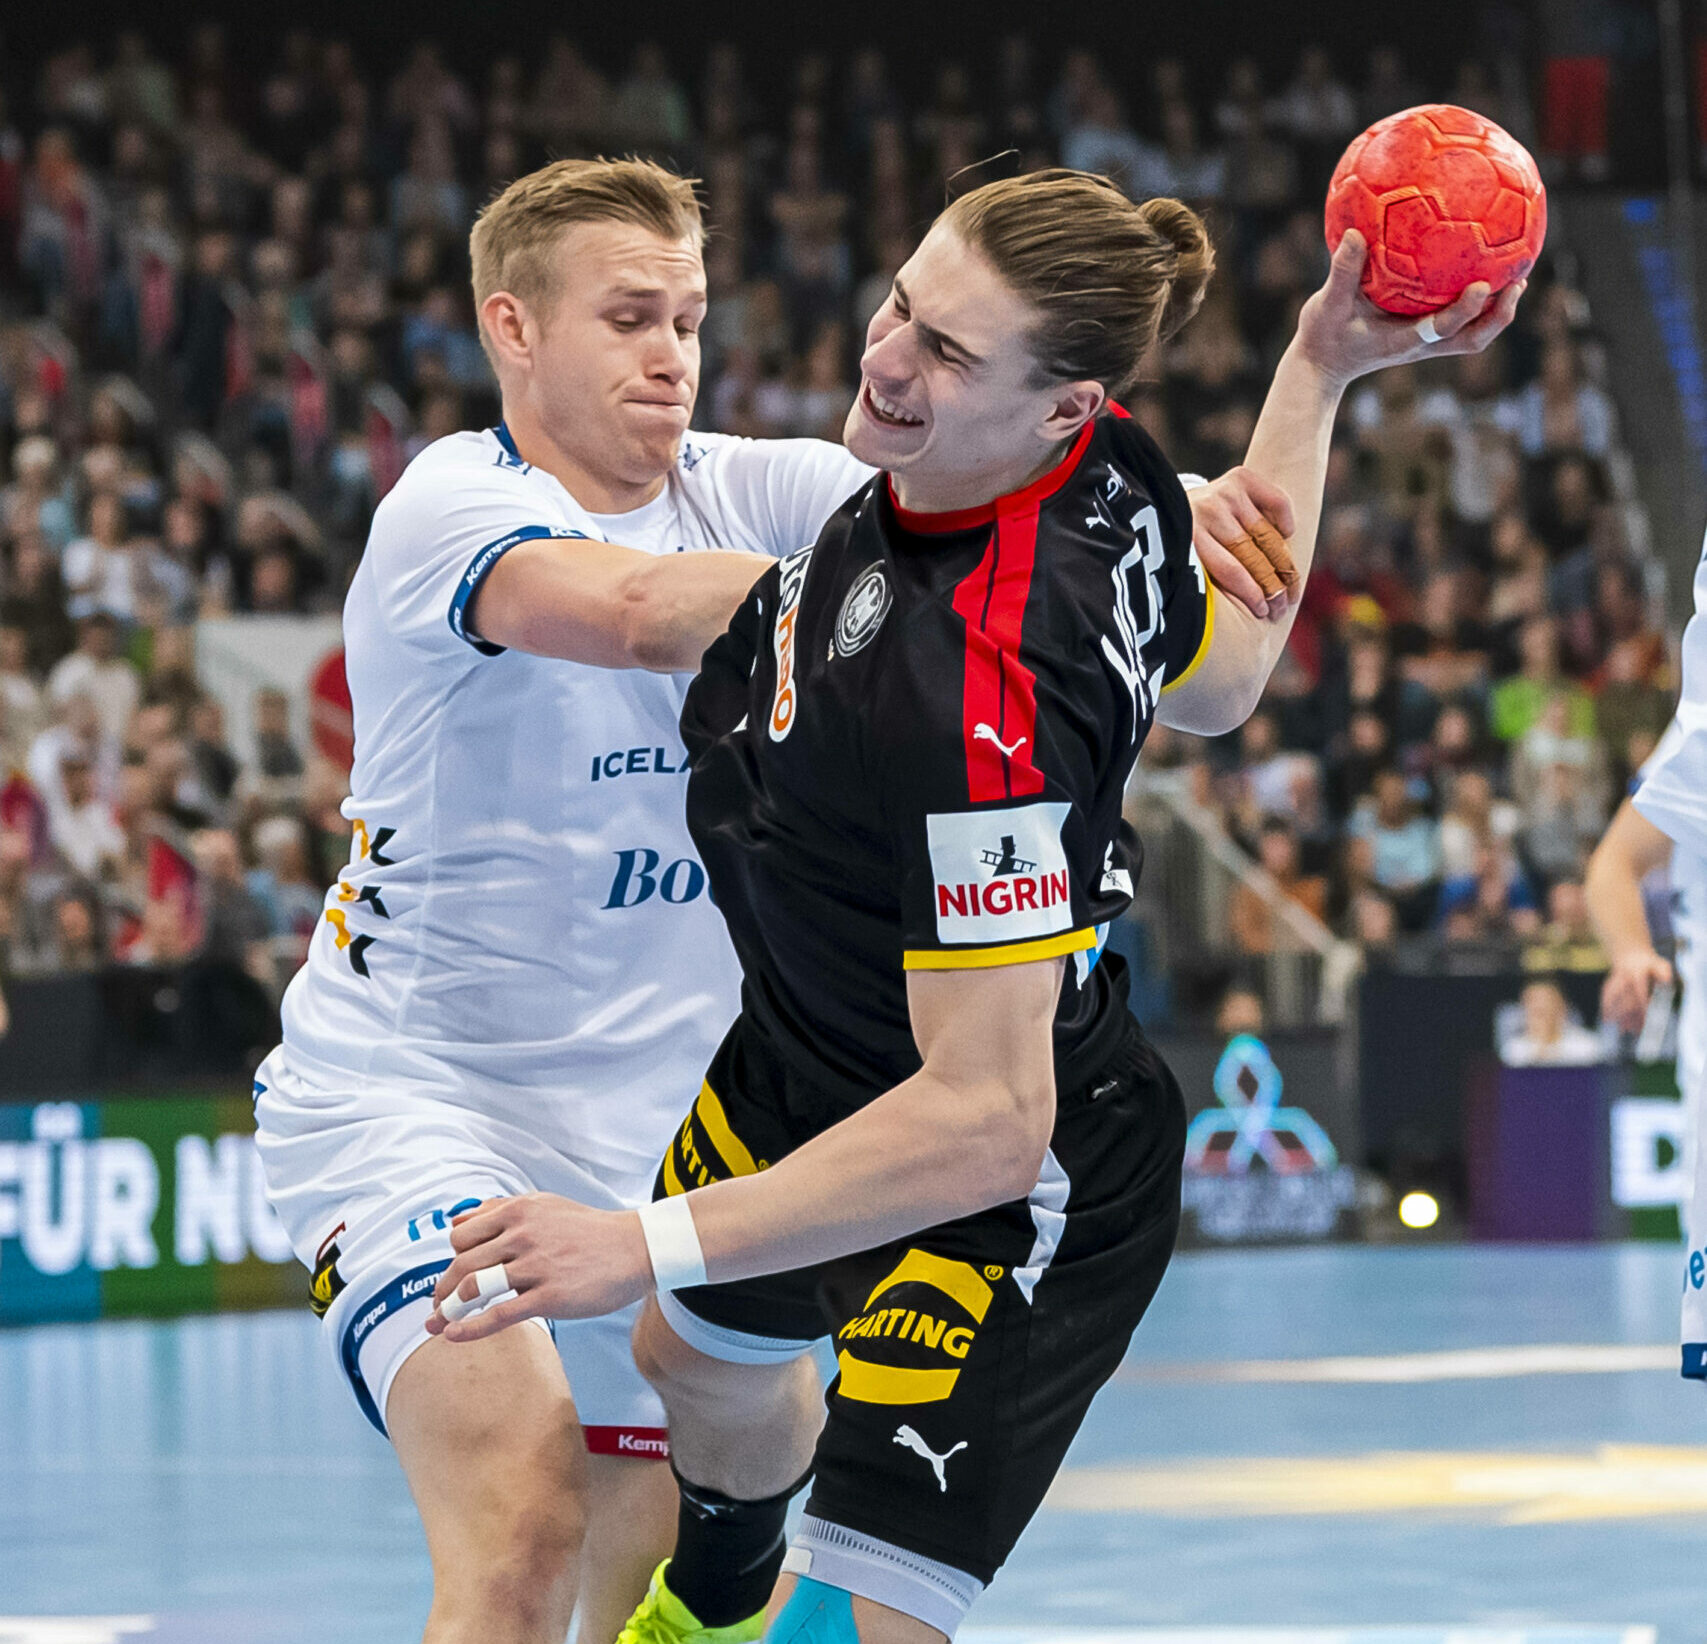 Juri Knorr, Spielmacher der deutschen Handballnationalmannschaft, wird gefoult.